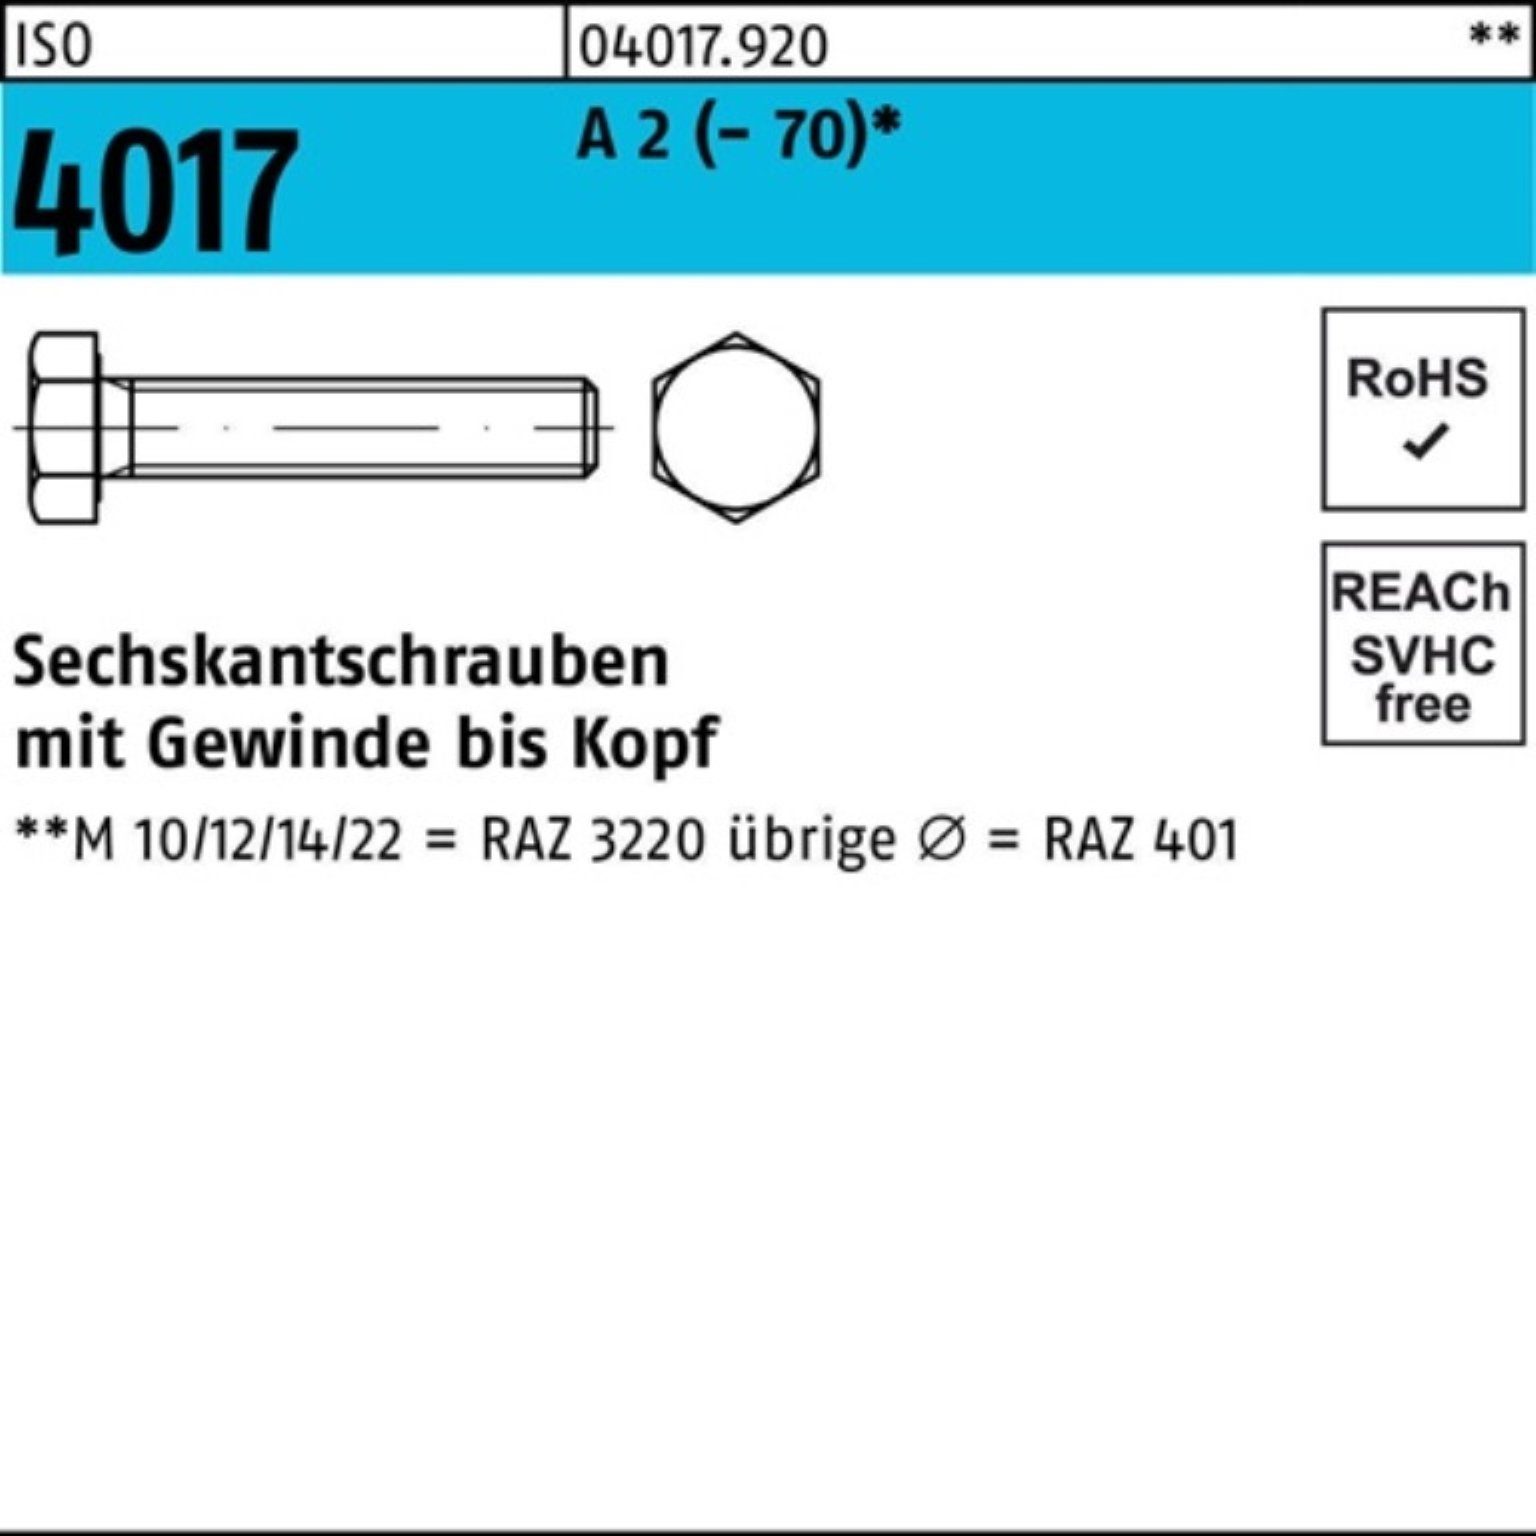 Bufab Sechskantschraube 100er Pack Sechskantschraube 200 VG 2 (70) Stück ISO 4017 50 M8x A